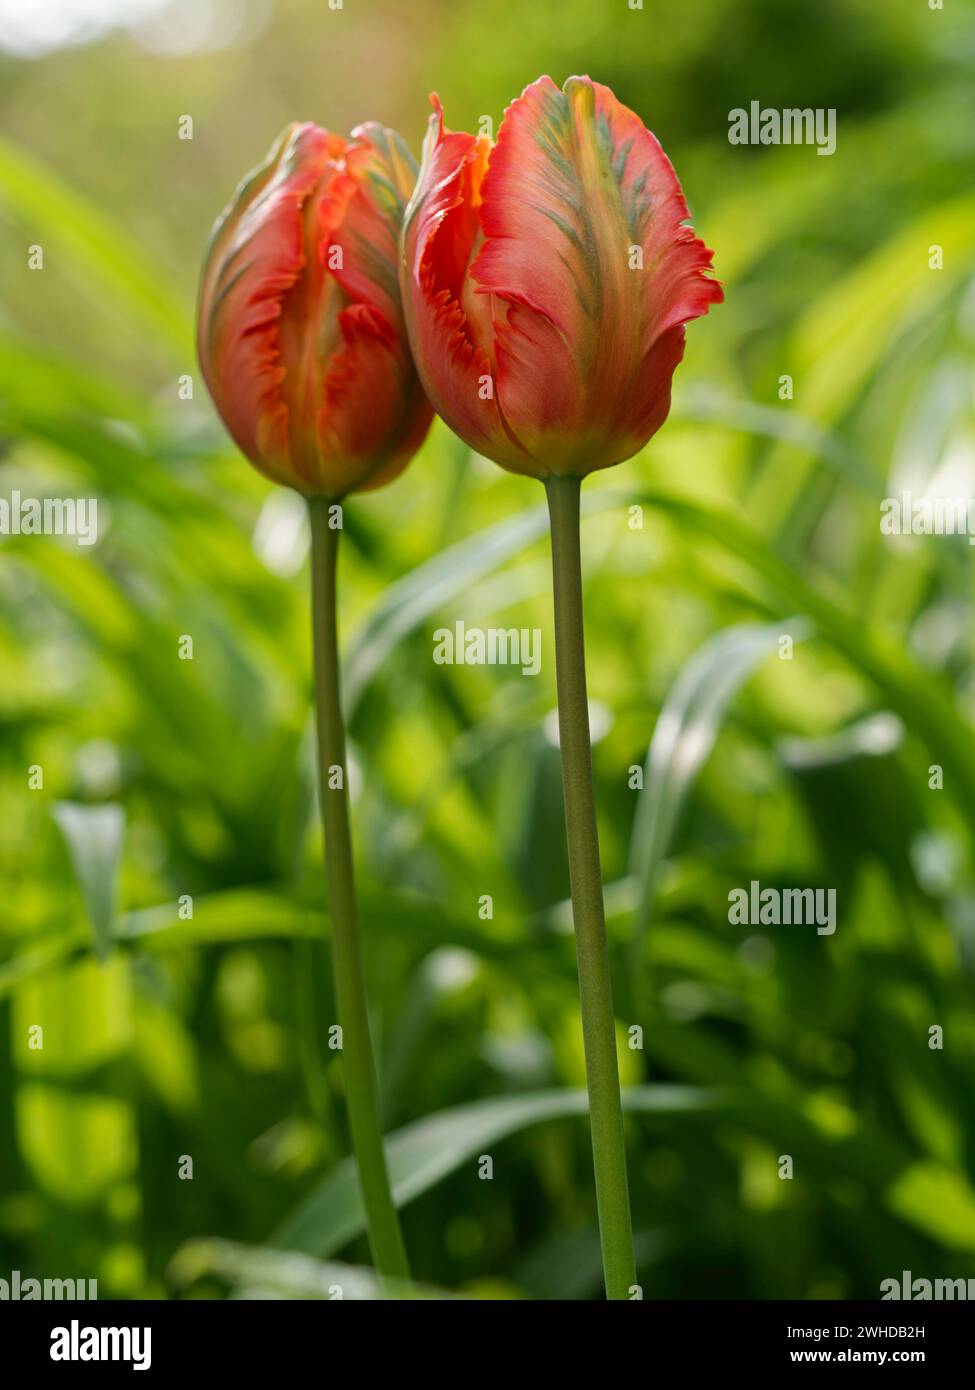 Tulip, garden tulip, Tulipa gesneriana Stock Photo